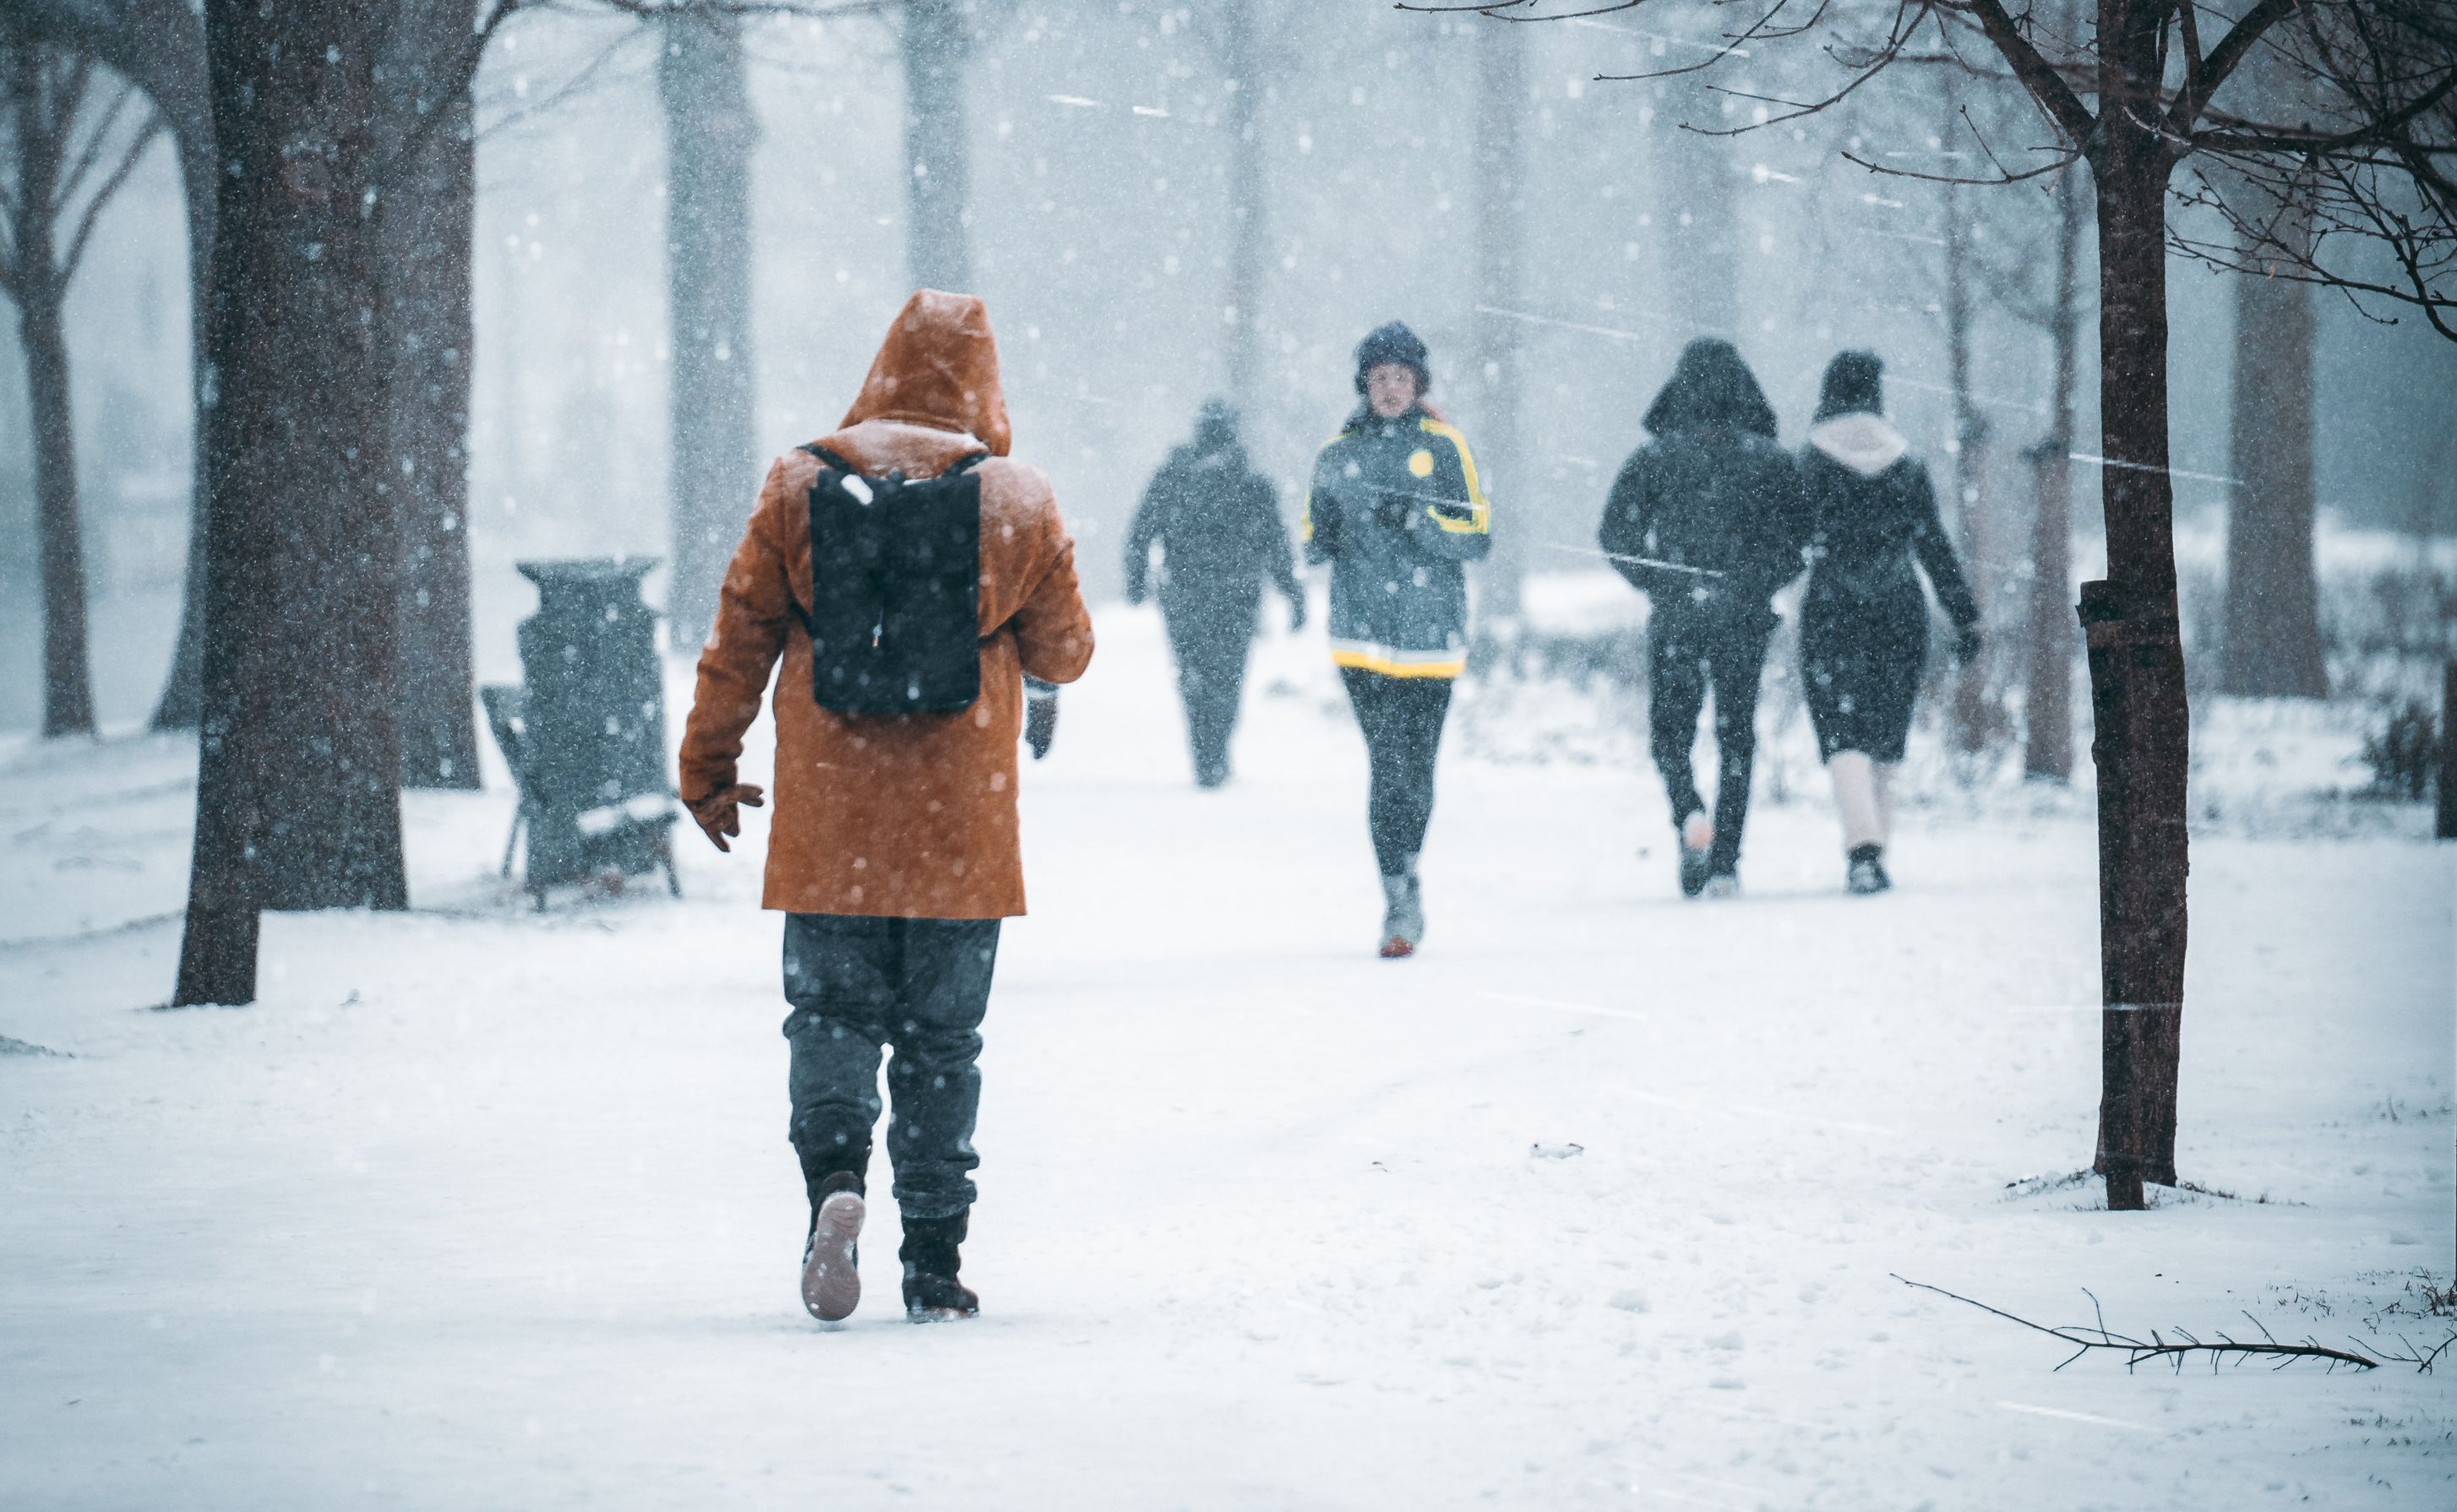 Žena běhá v zimě v parku. Počasí je velmi chladné a větrné. Sněží. Lidé nosí kapuce a teplé bundy, aby odolali mrazu.